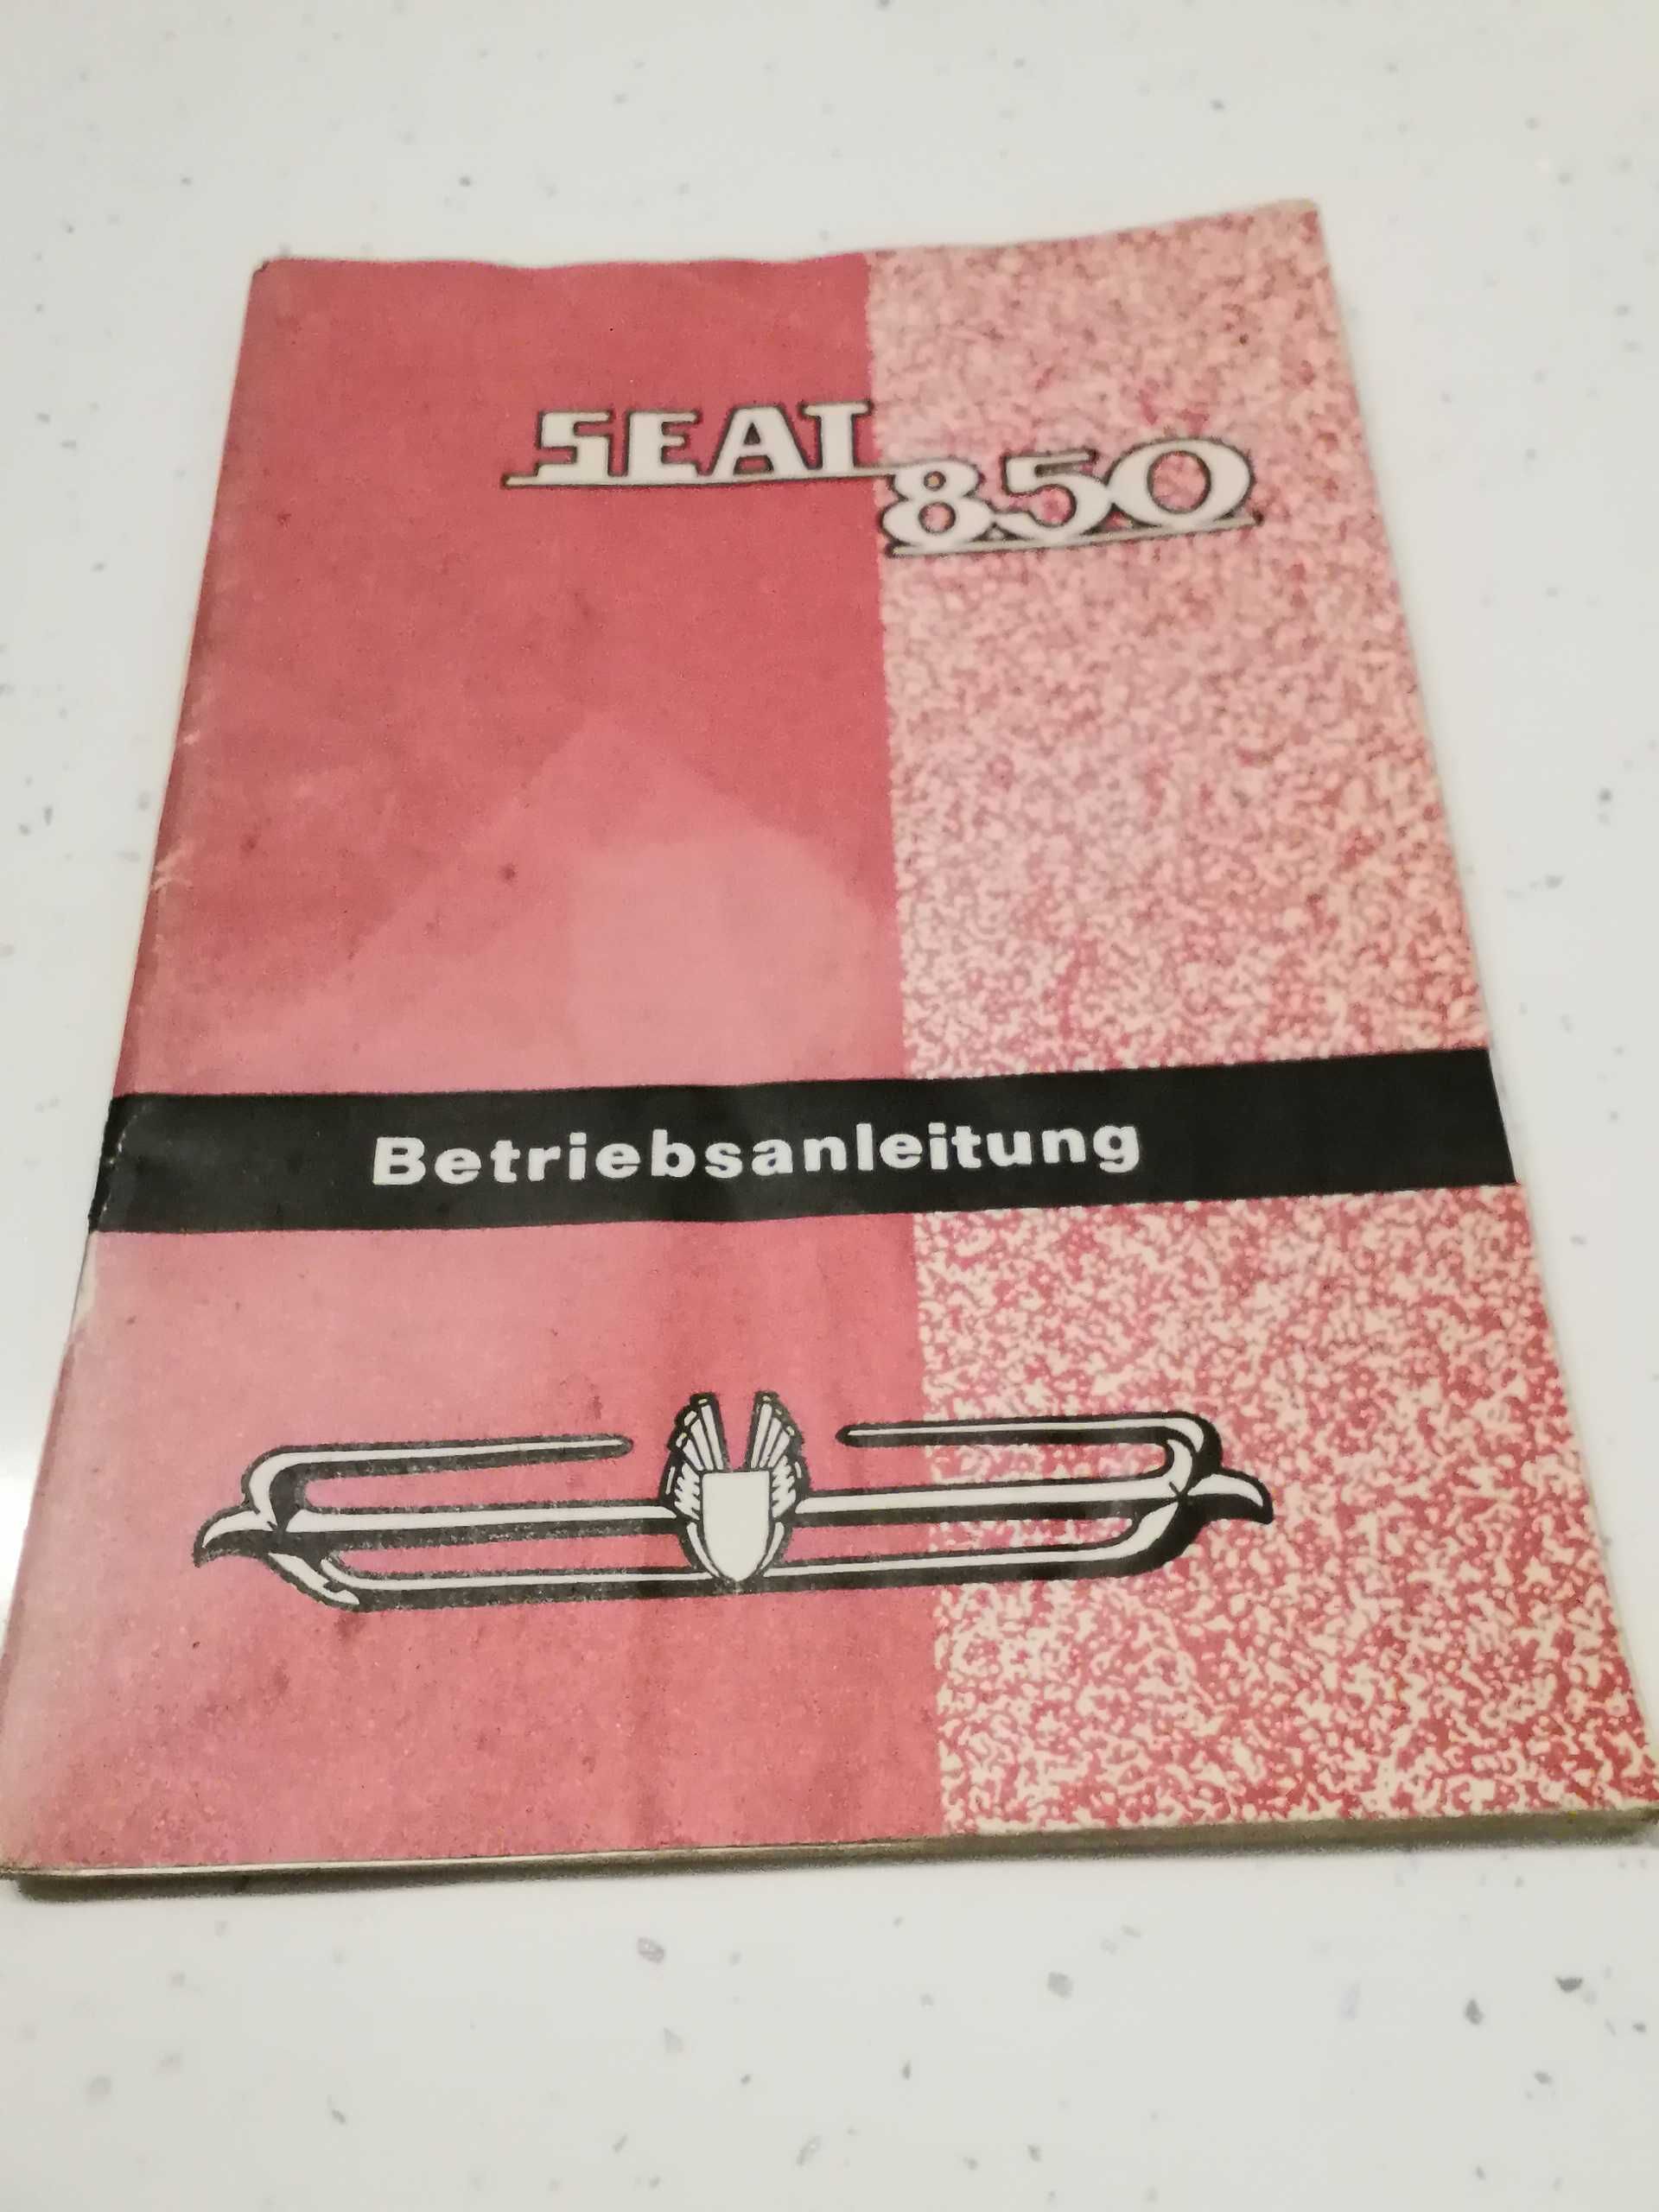 SEAT-850 orginalna instrukcja obsługi z roku 1972